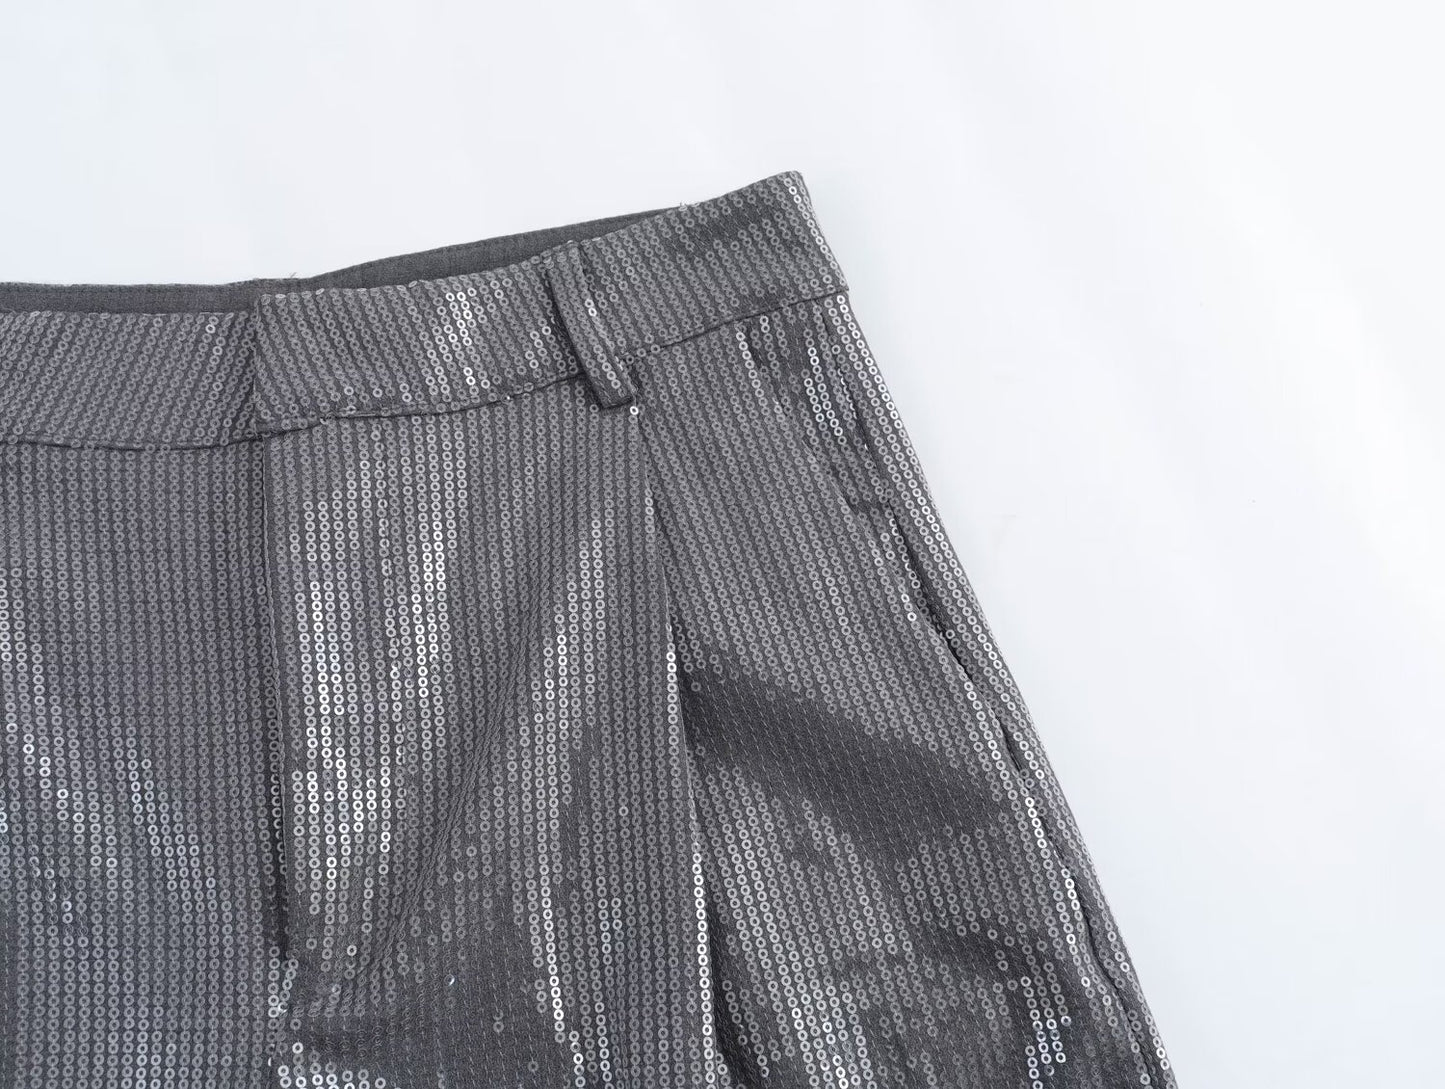 Y2K Winter Outfits | Silver Chrome Blazer Wide Leg Pants